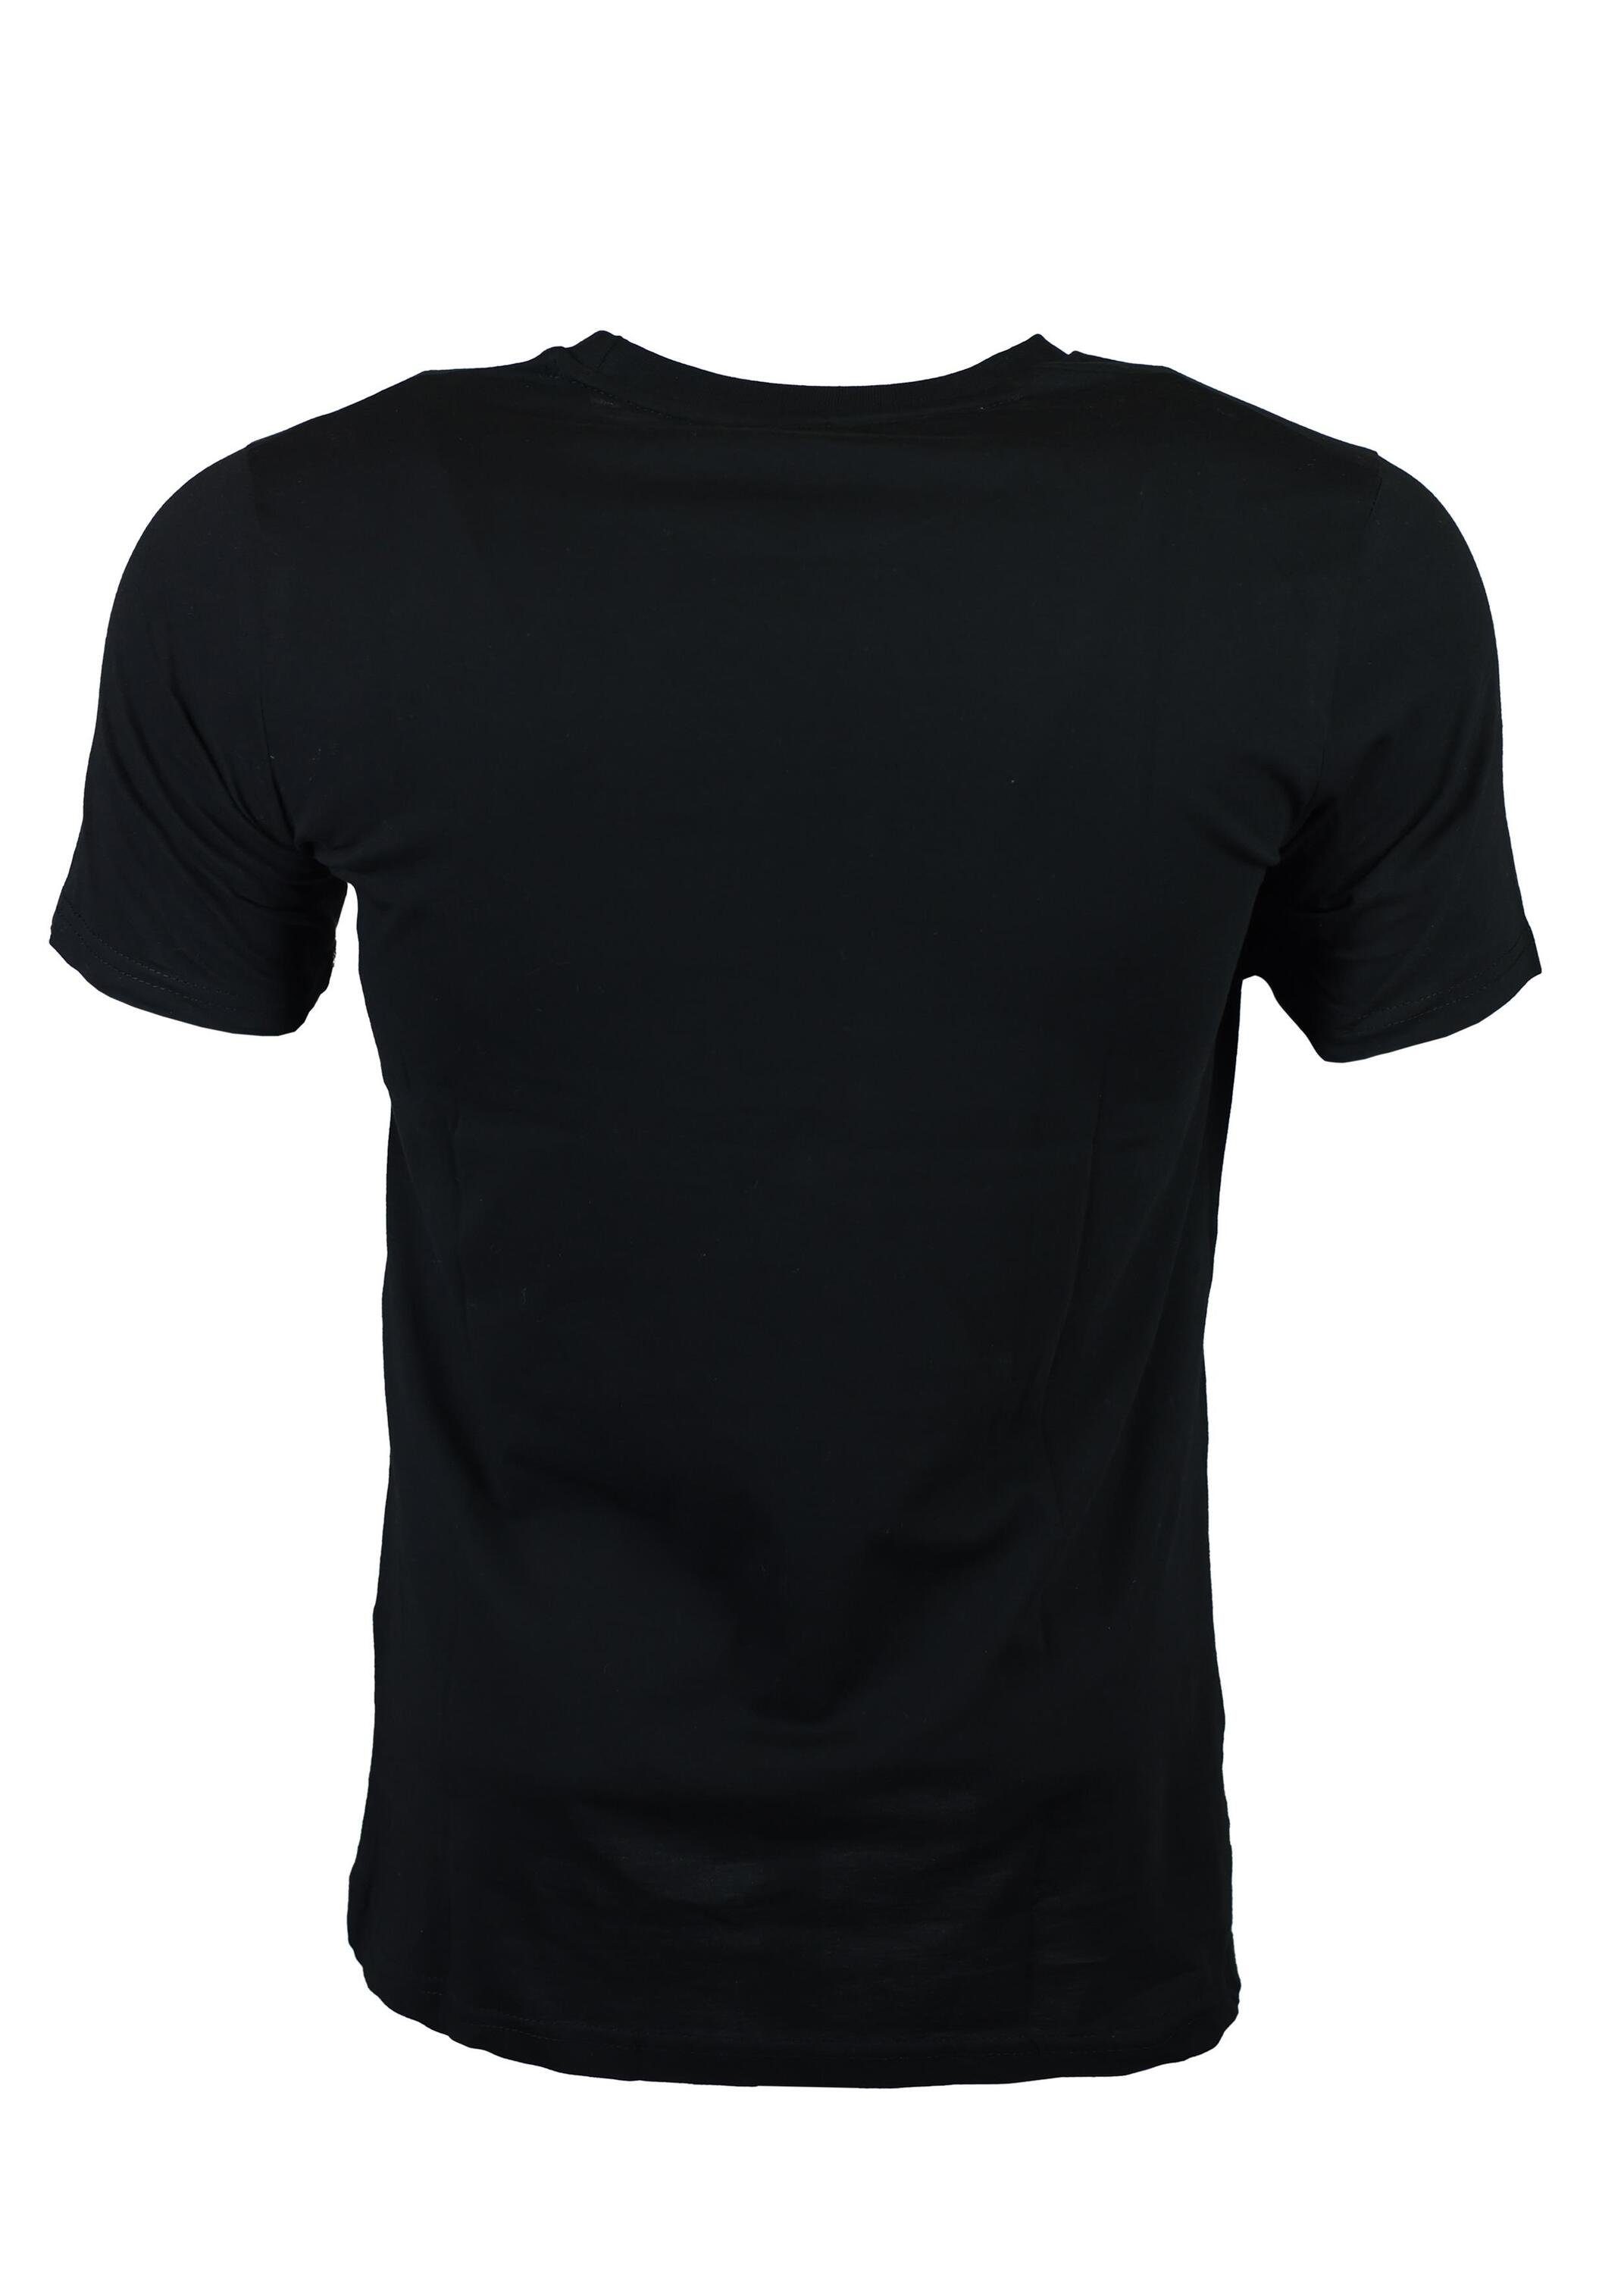 Karl Black T-Shirt aus Fußball, Jugend für Kinder, Baumwolle, FuPer